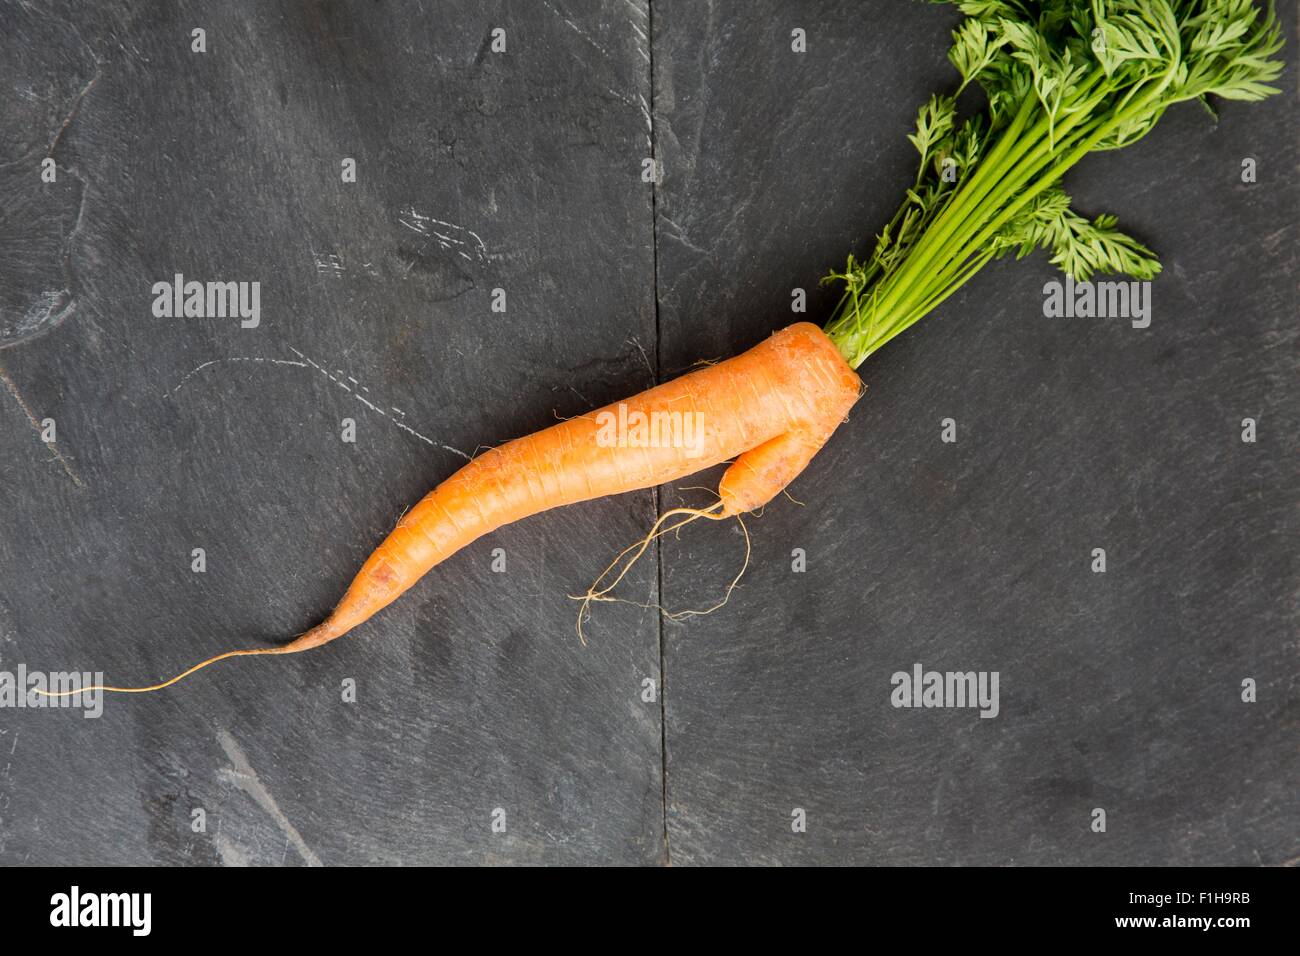 Still life of fresh misshapen carrot Stock Photo